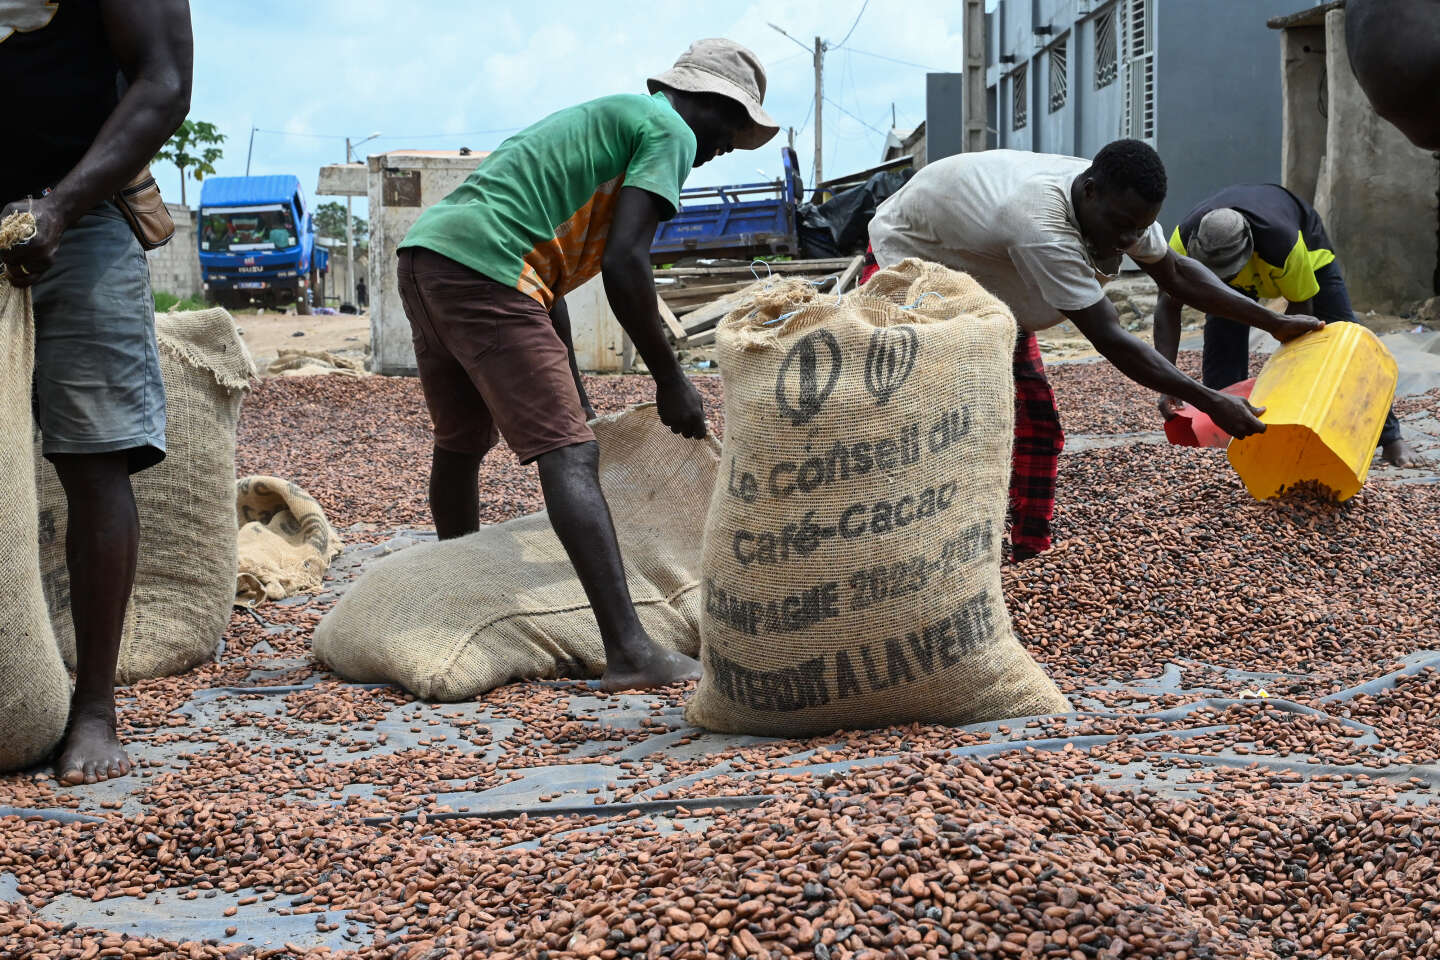 En Côte d’Ivoire, les planteurs de cacao veulent profiter de la hausse des cours